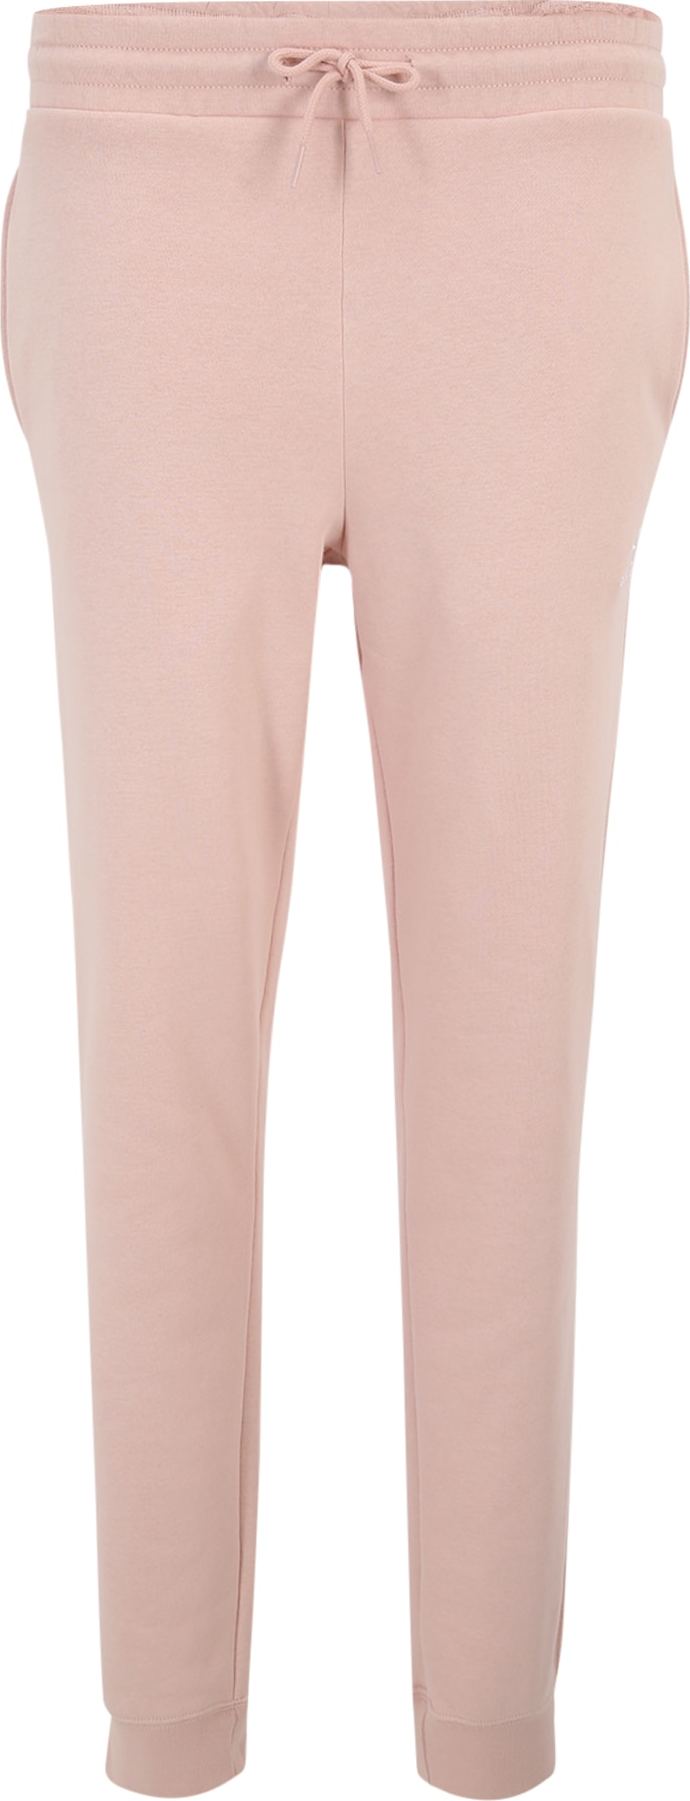 Kalhoty Converse pastelově růžová / bílá